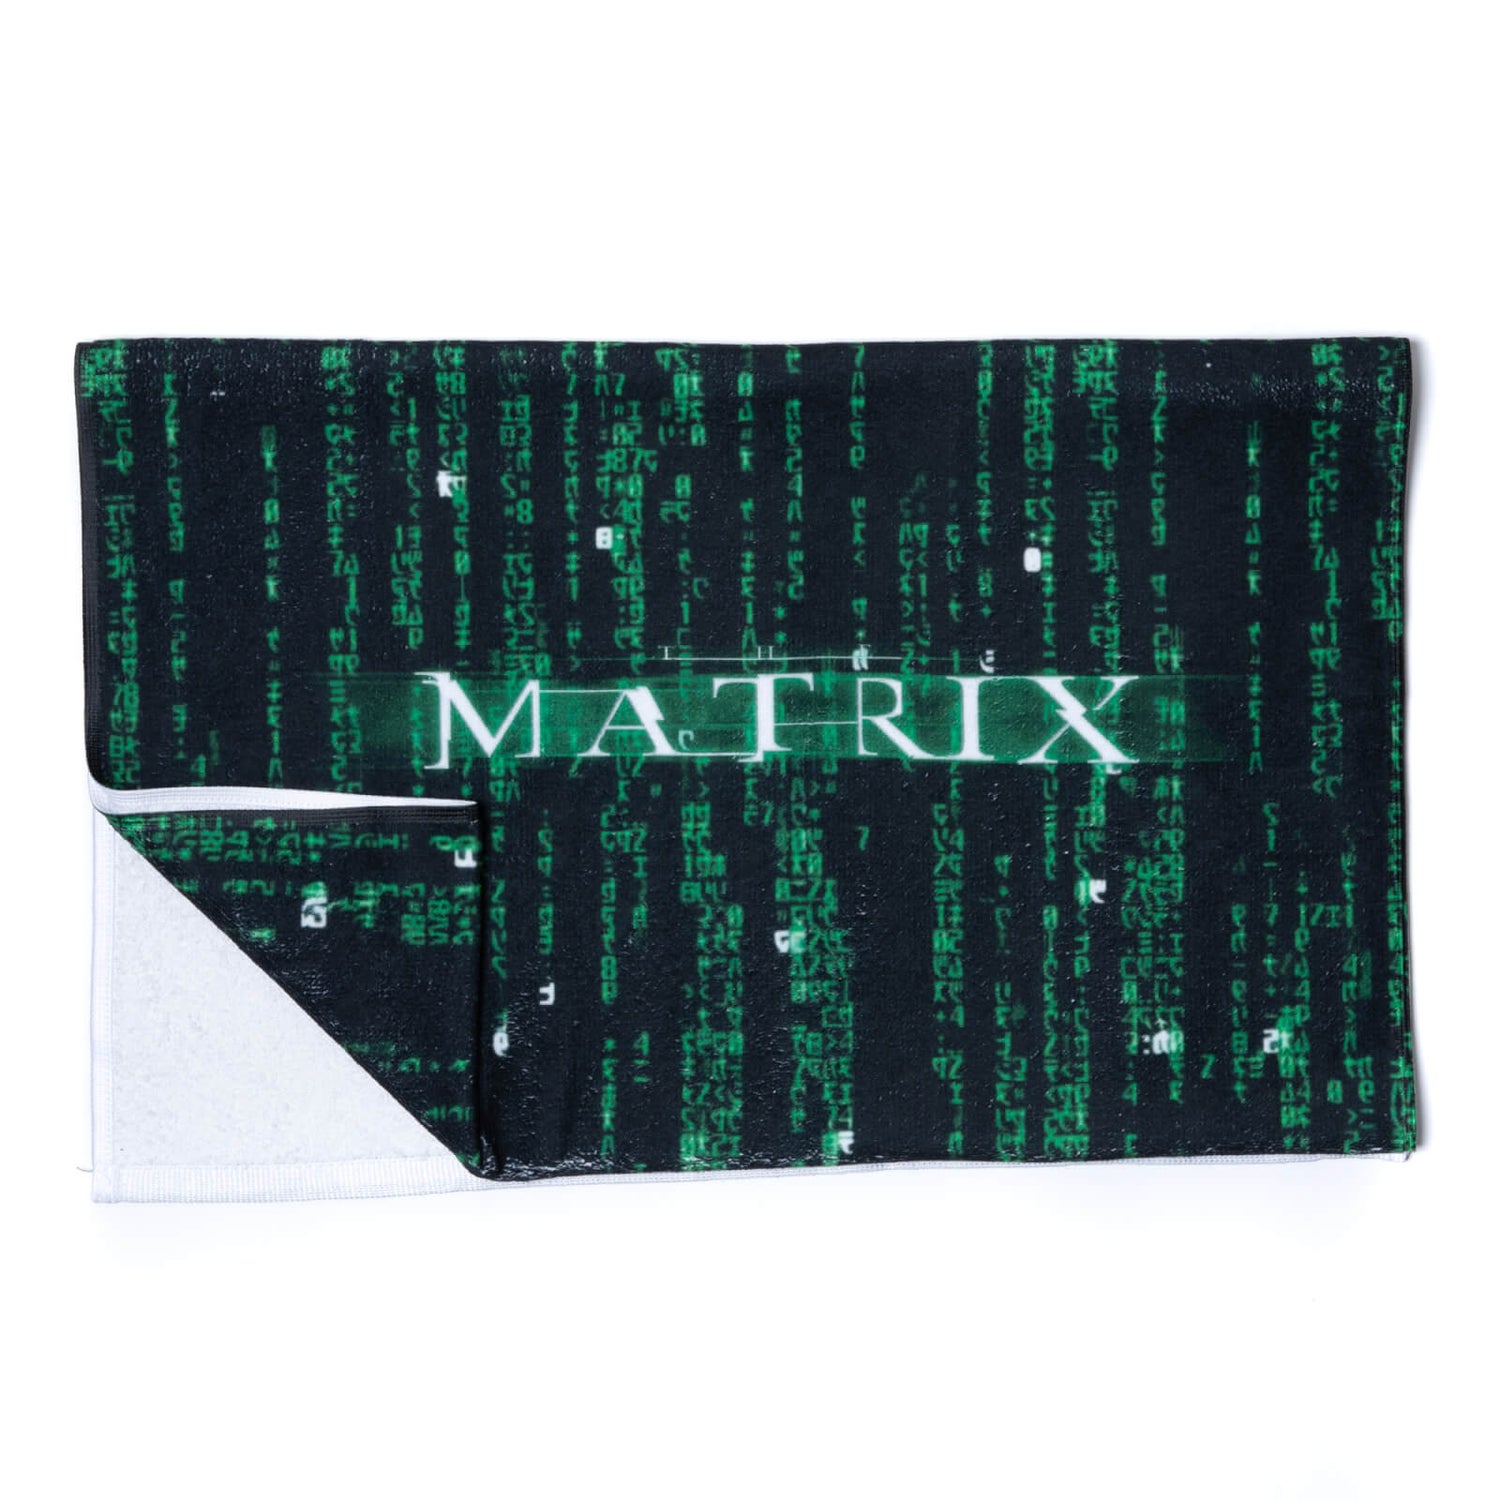 The Matrix Hand Towel